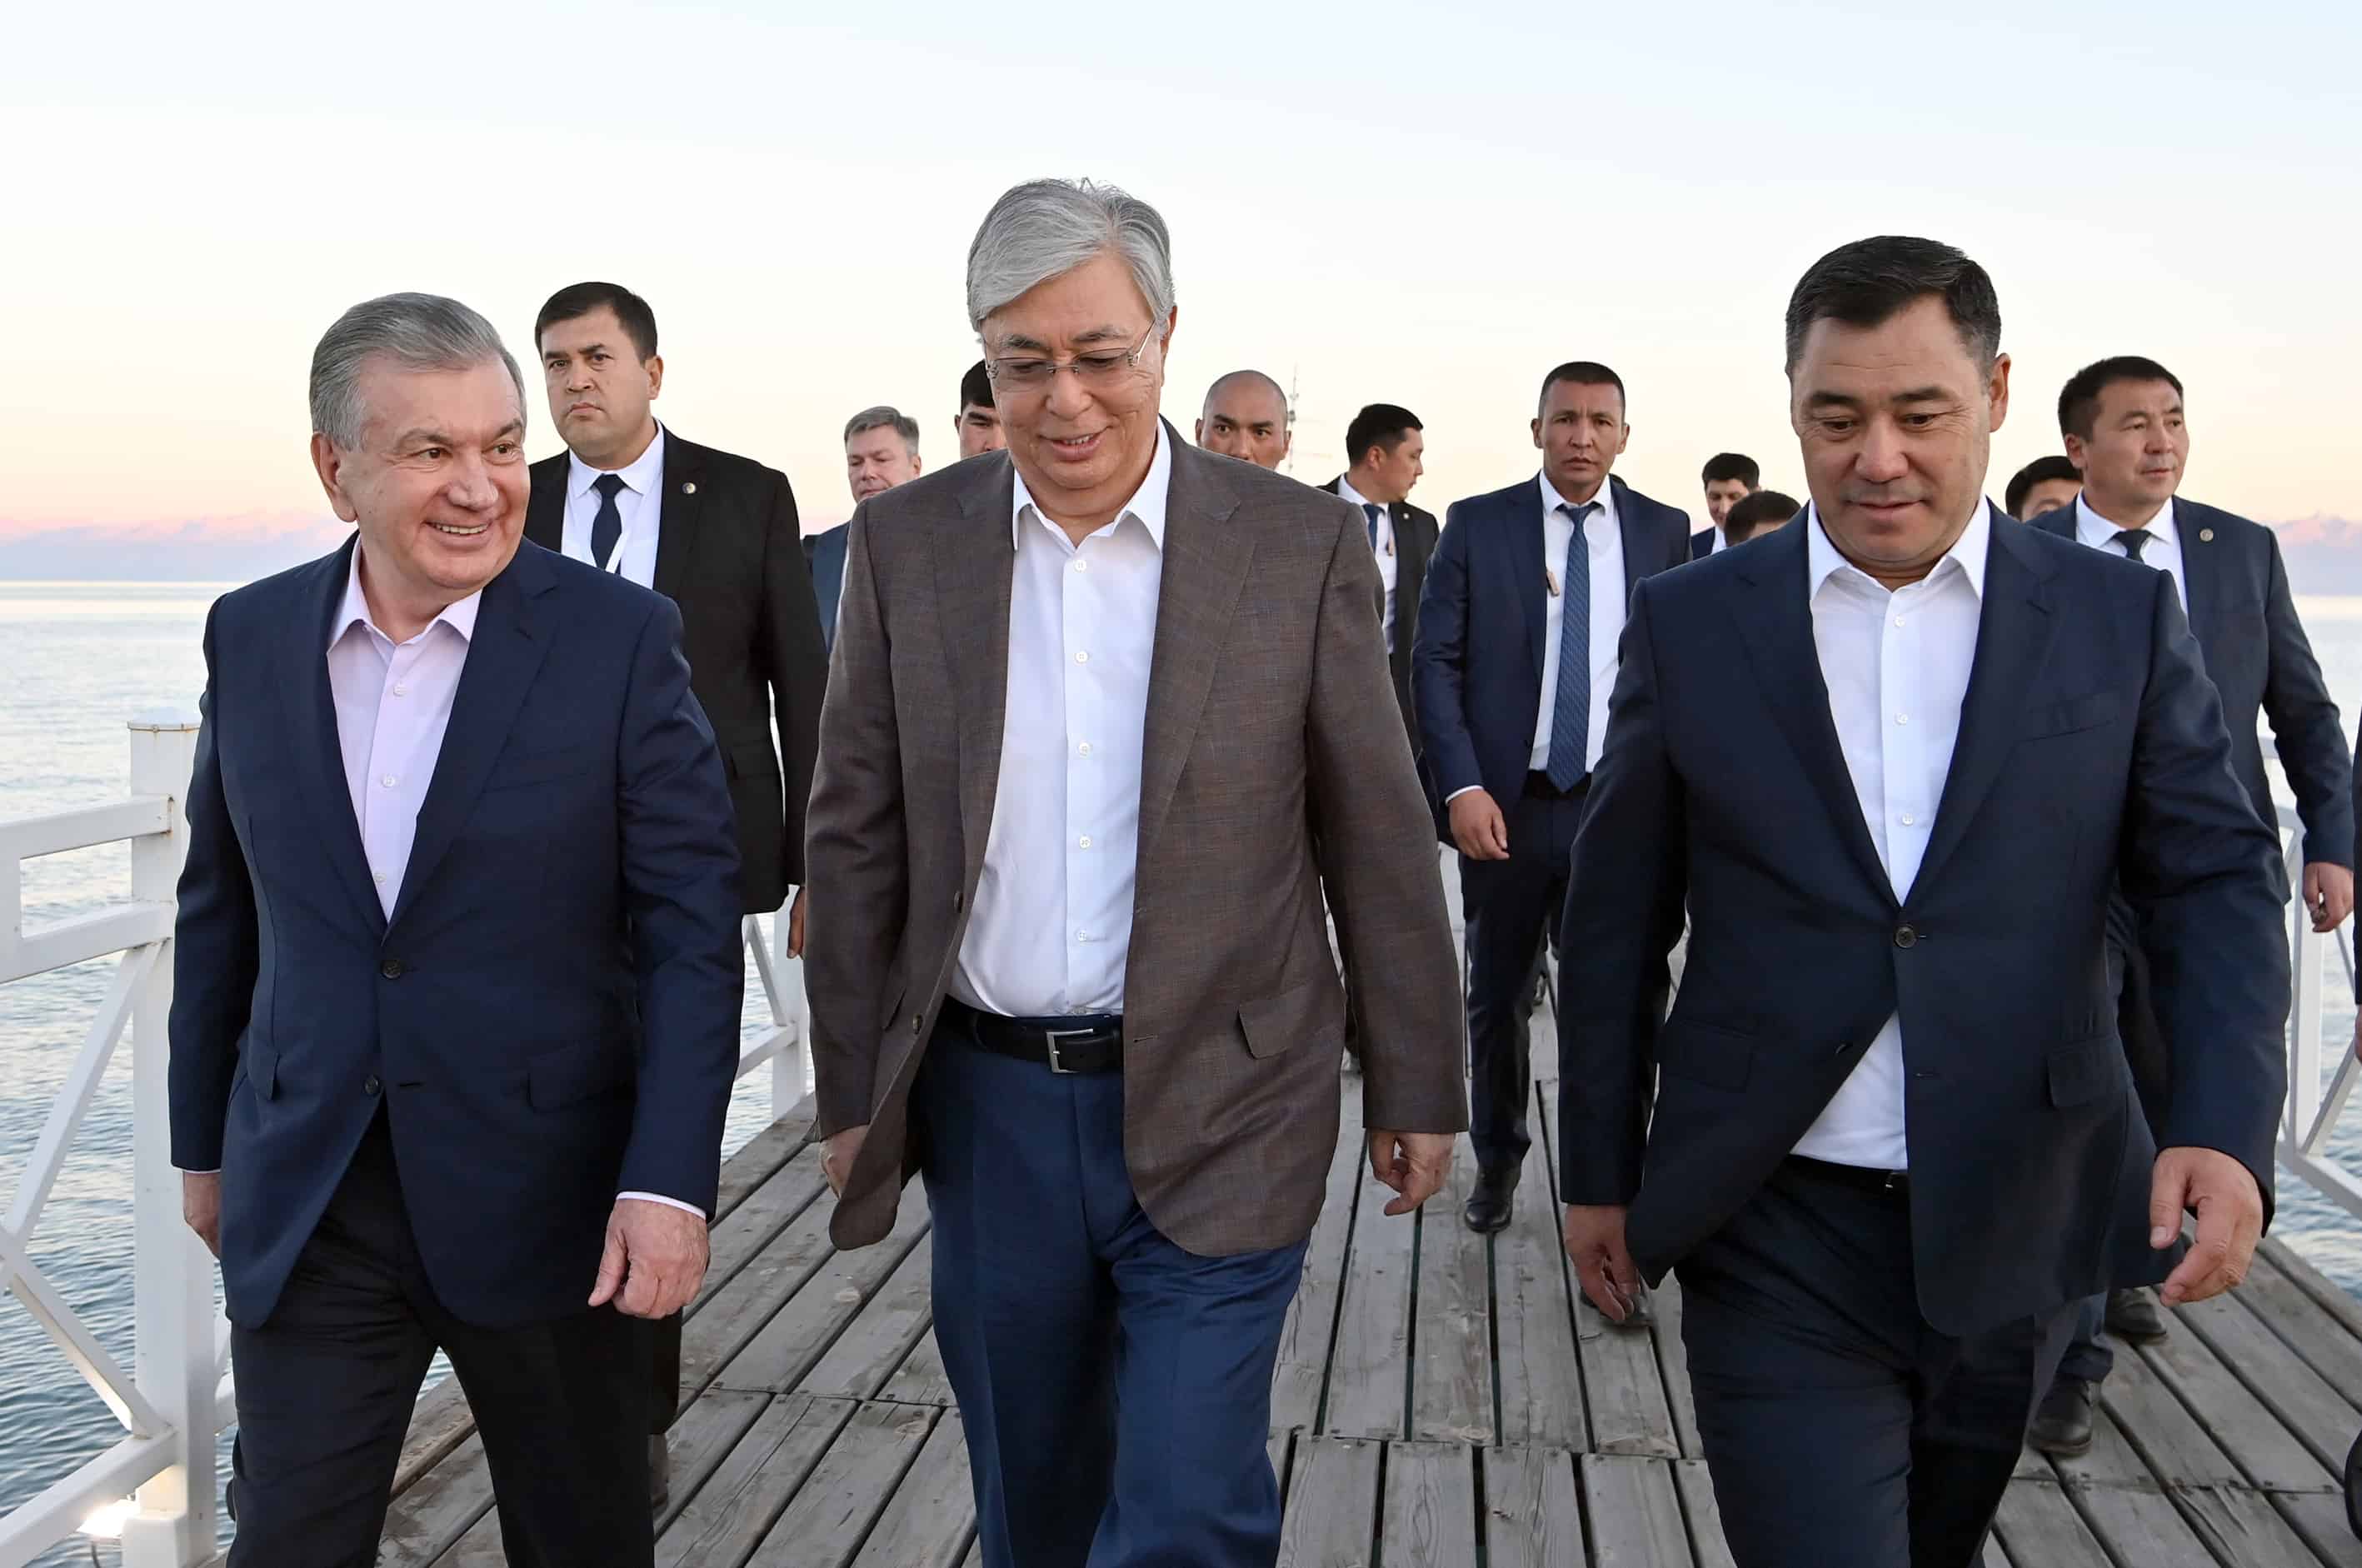 Сегодня в Чолпон-Ате пройдет встреча президентов Центральной Азии — подготовлен солидный пакет документов